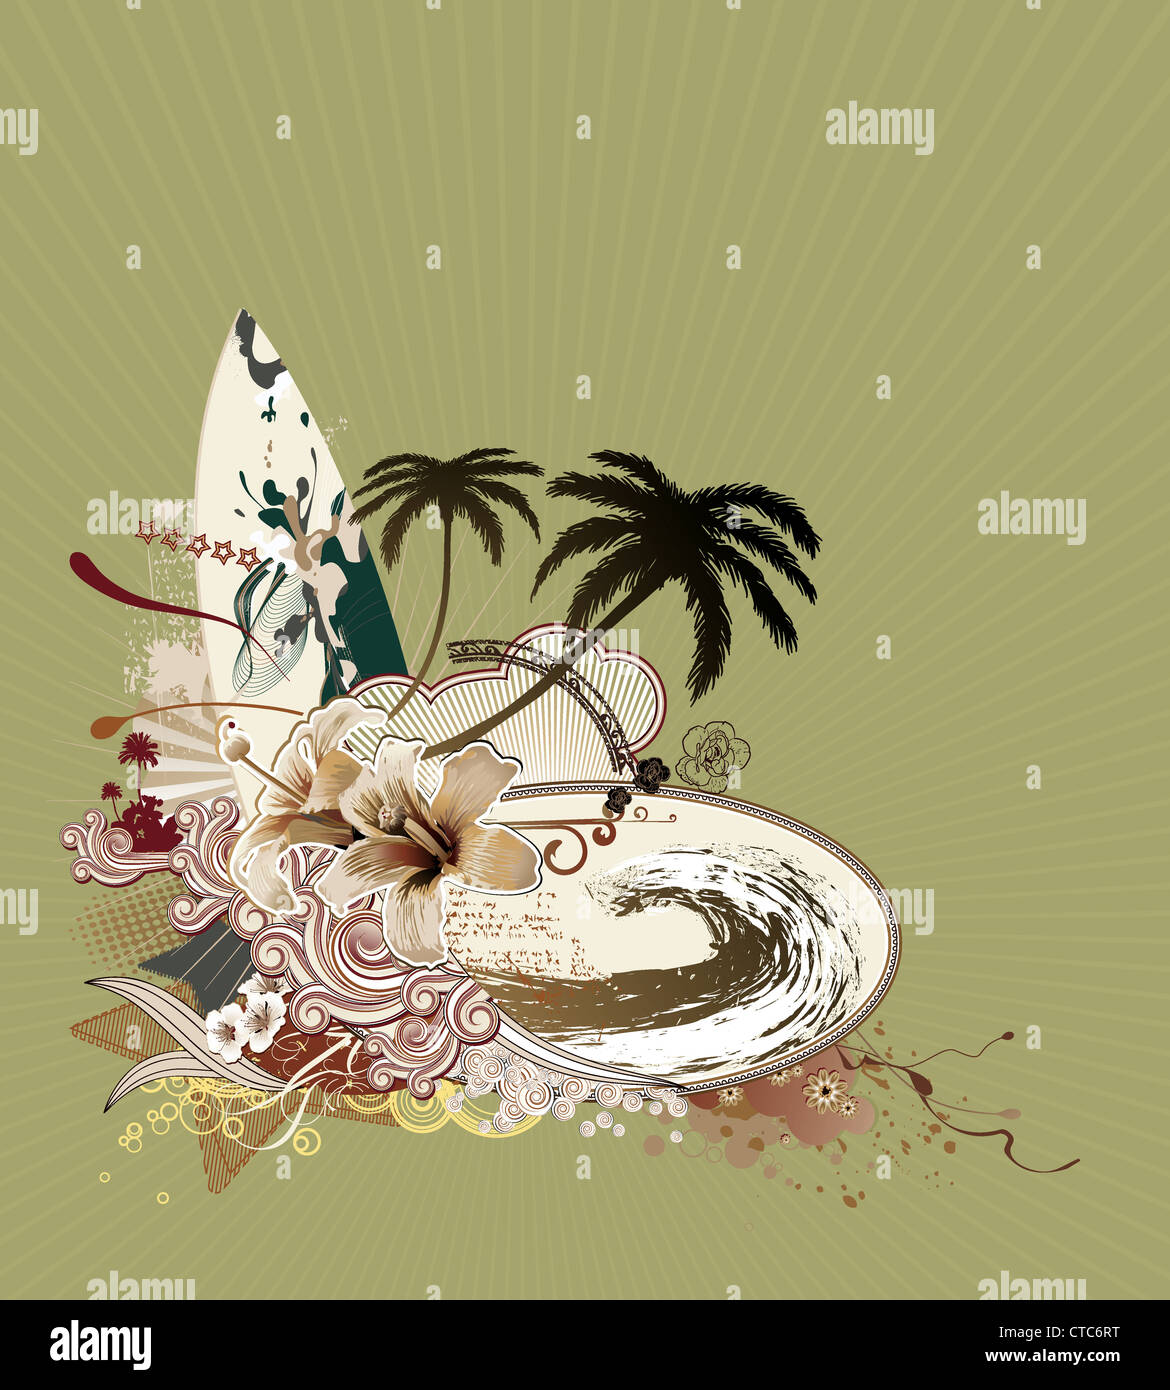 Illustrazione Vettoriale composizione grunge tavola da surf su raggi di sole grande onda hibiscus palme silhouette ricci strisce retrò Foto Stock